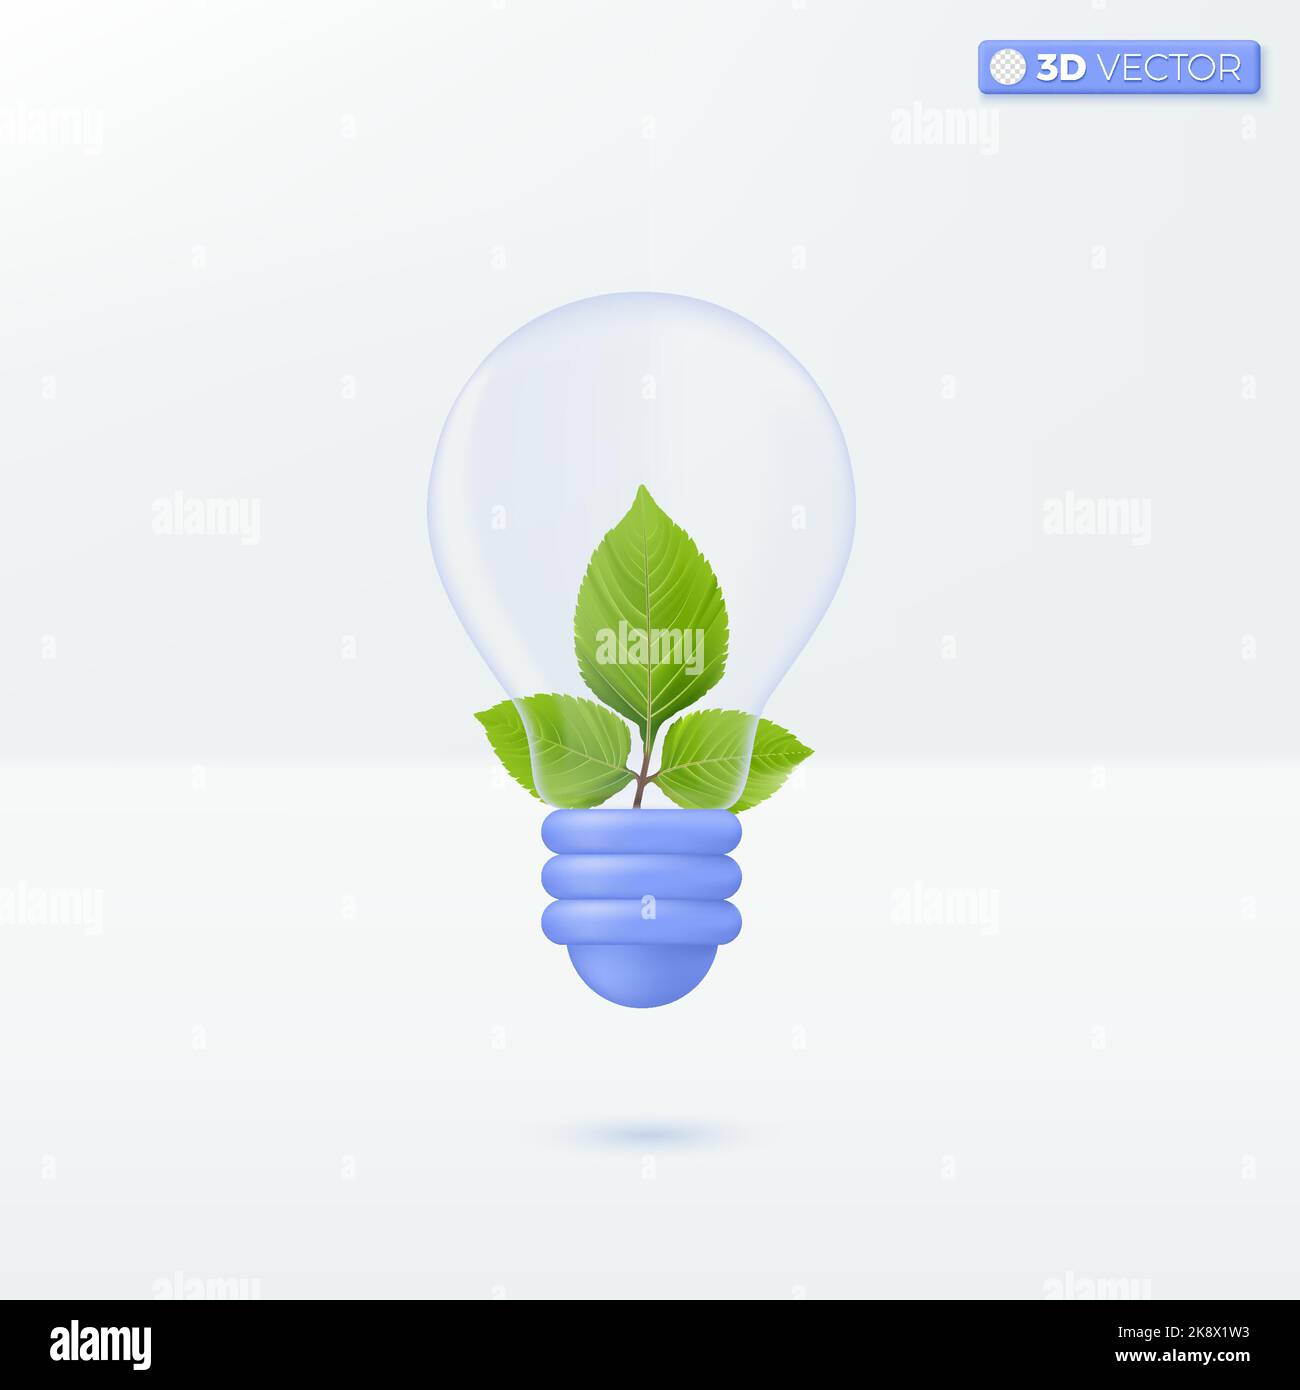 Transparence de l'ampoule et feuille verte. Développer l'environnement, l'écologie, la métaphore de l'idée. 3D vecteur isolé illustration design dessin dessin dessin animé pastel minimaliste Illustration de Vecteur